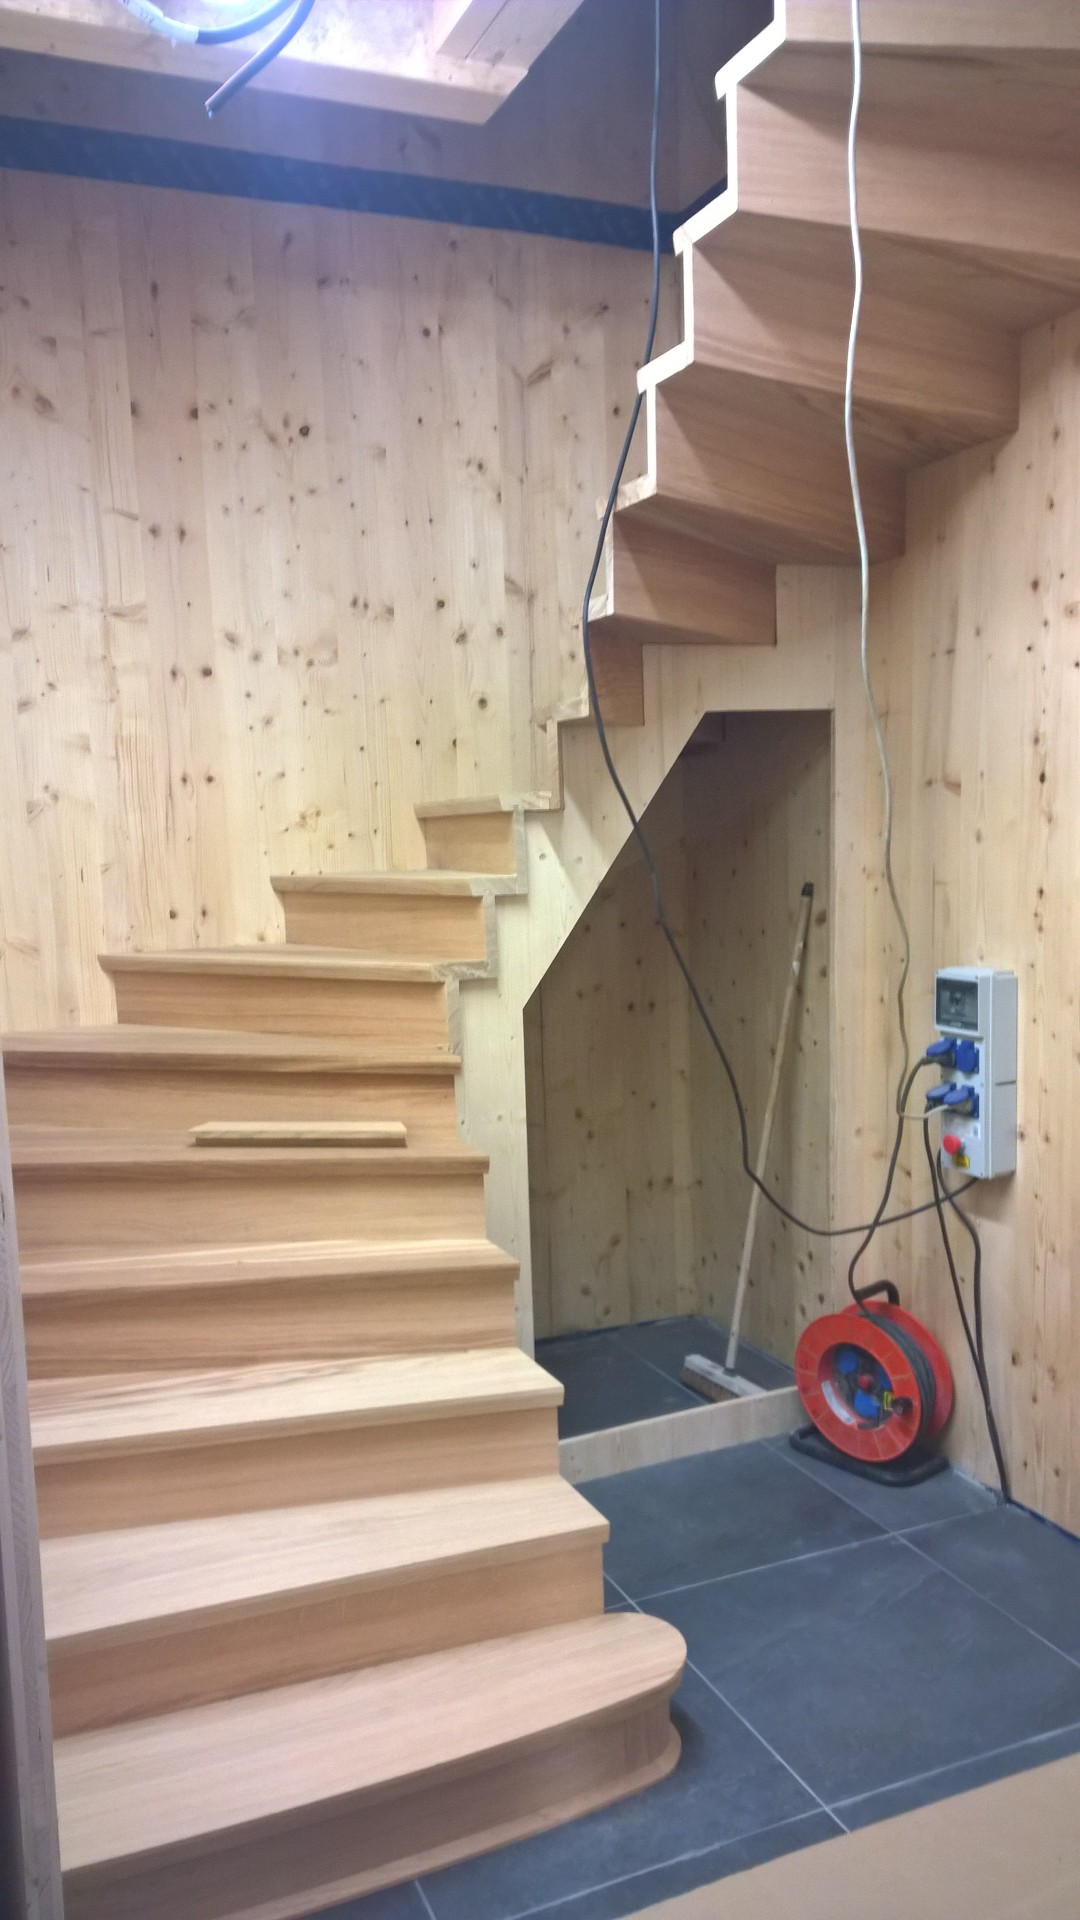 Fabrication d’un escalier  proche de Lommoye 78270 devis gratuit